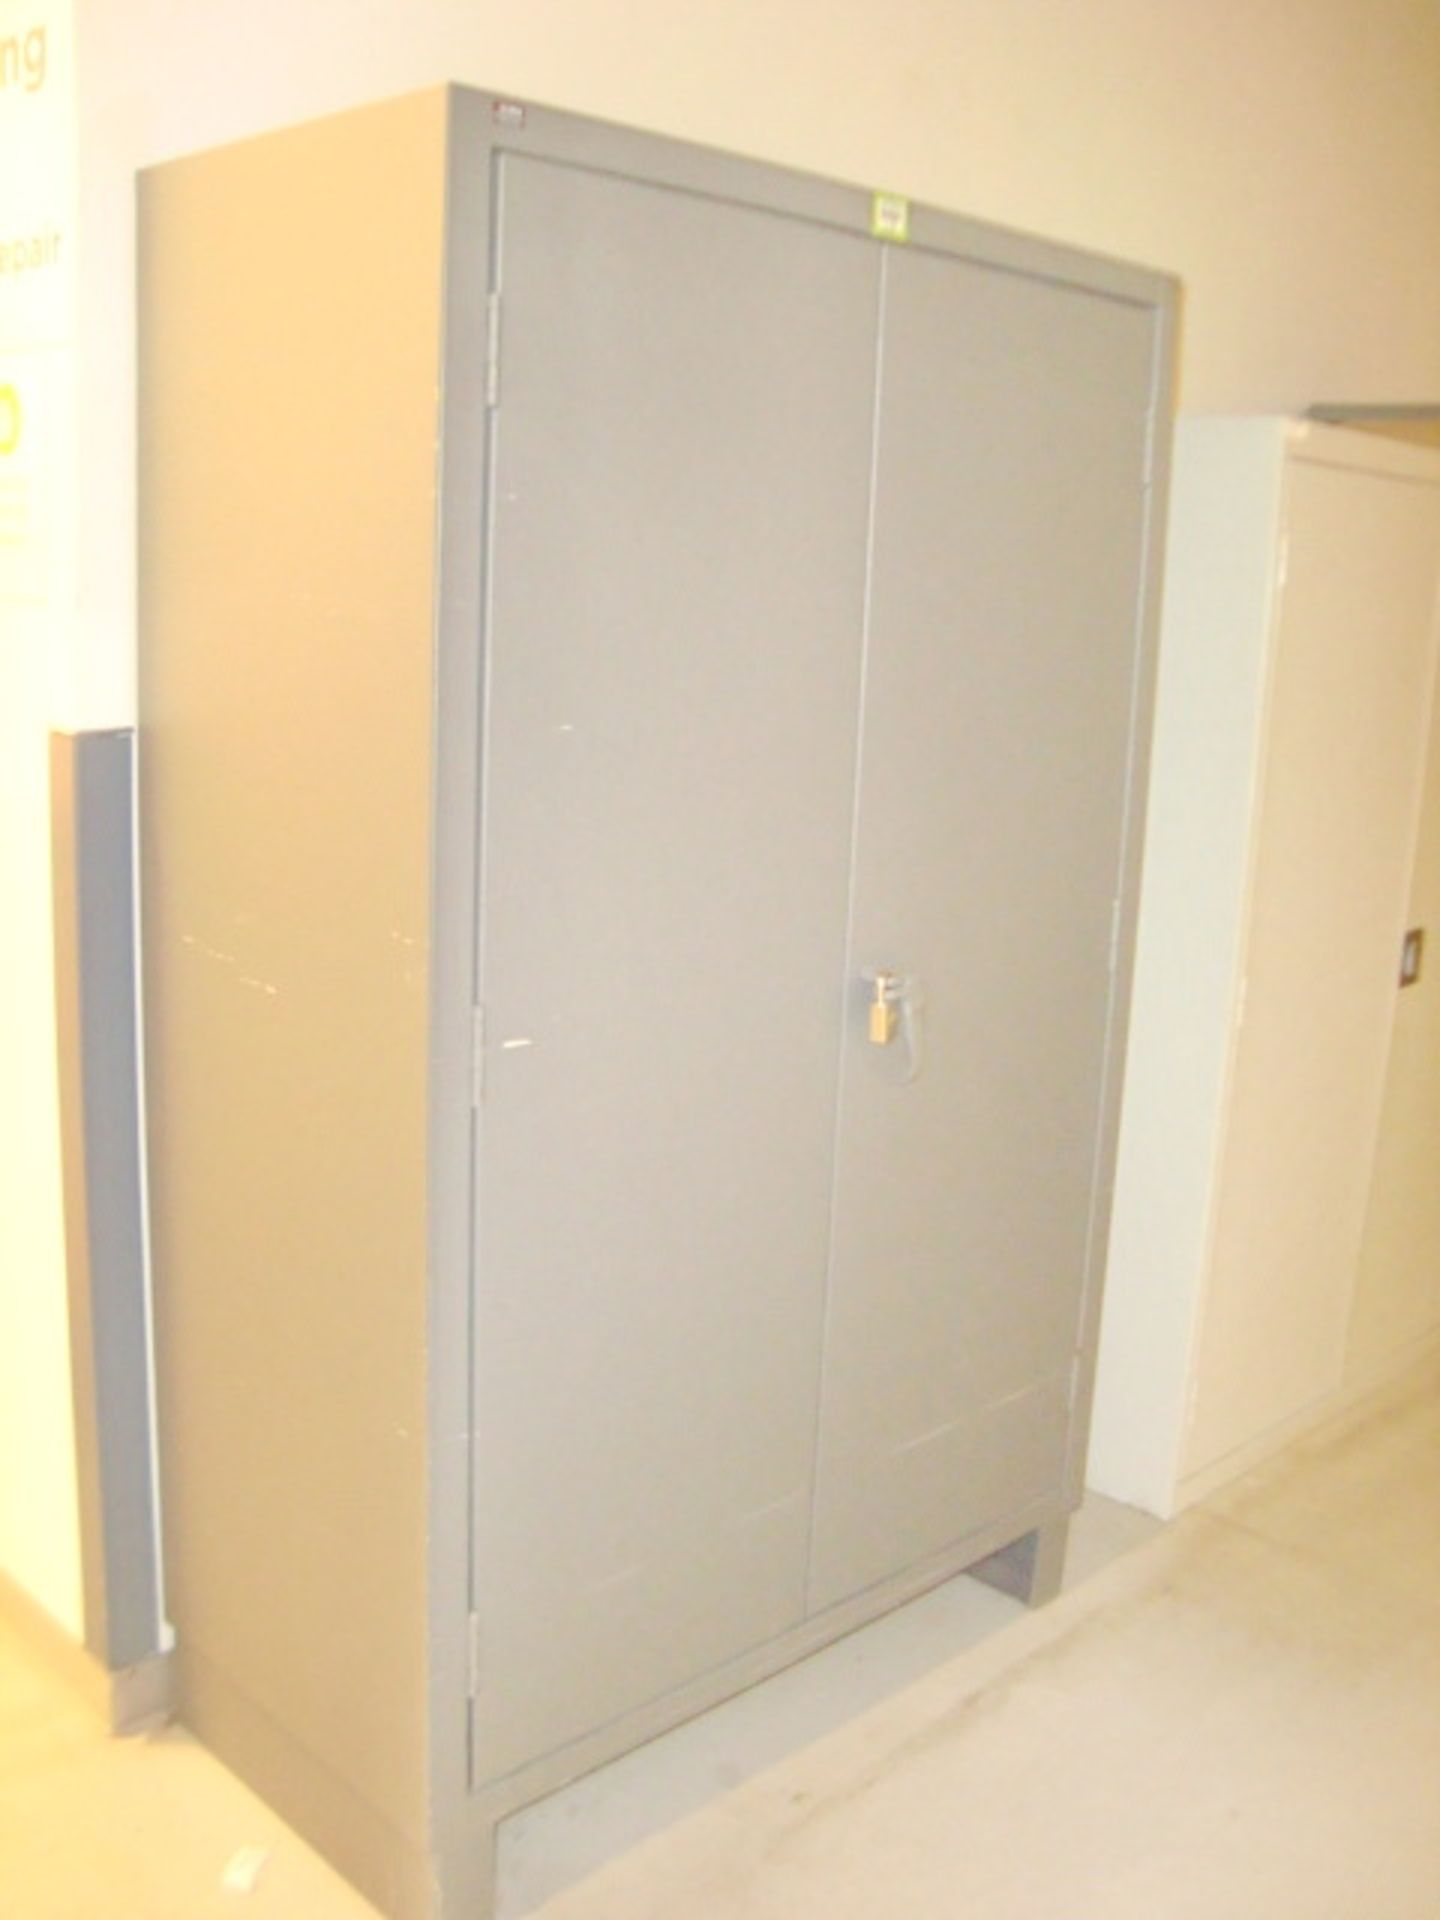 Heavy Duty 2-Door Storage Cabinets - Image 2 of 4